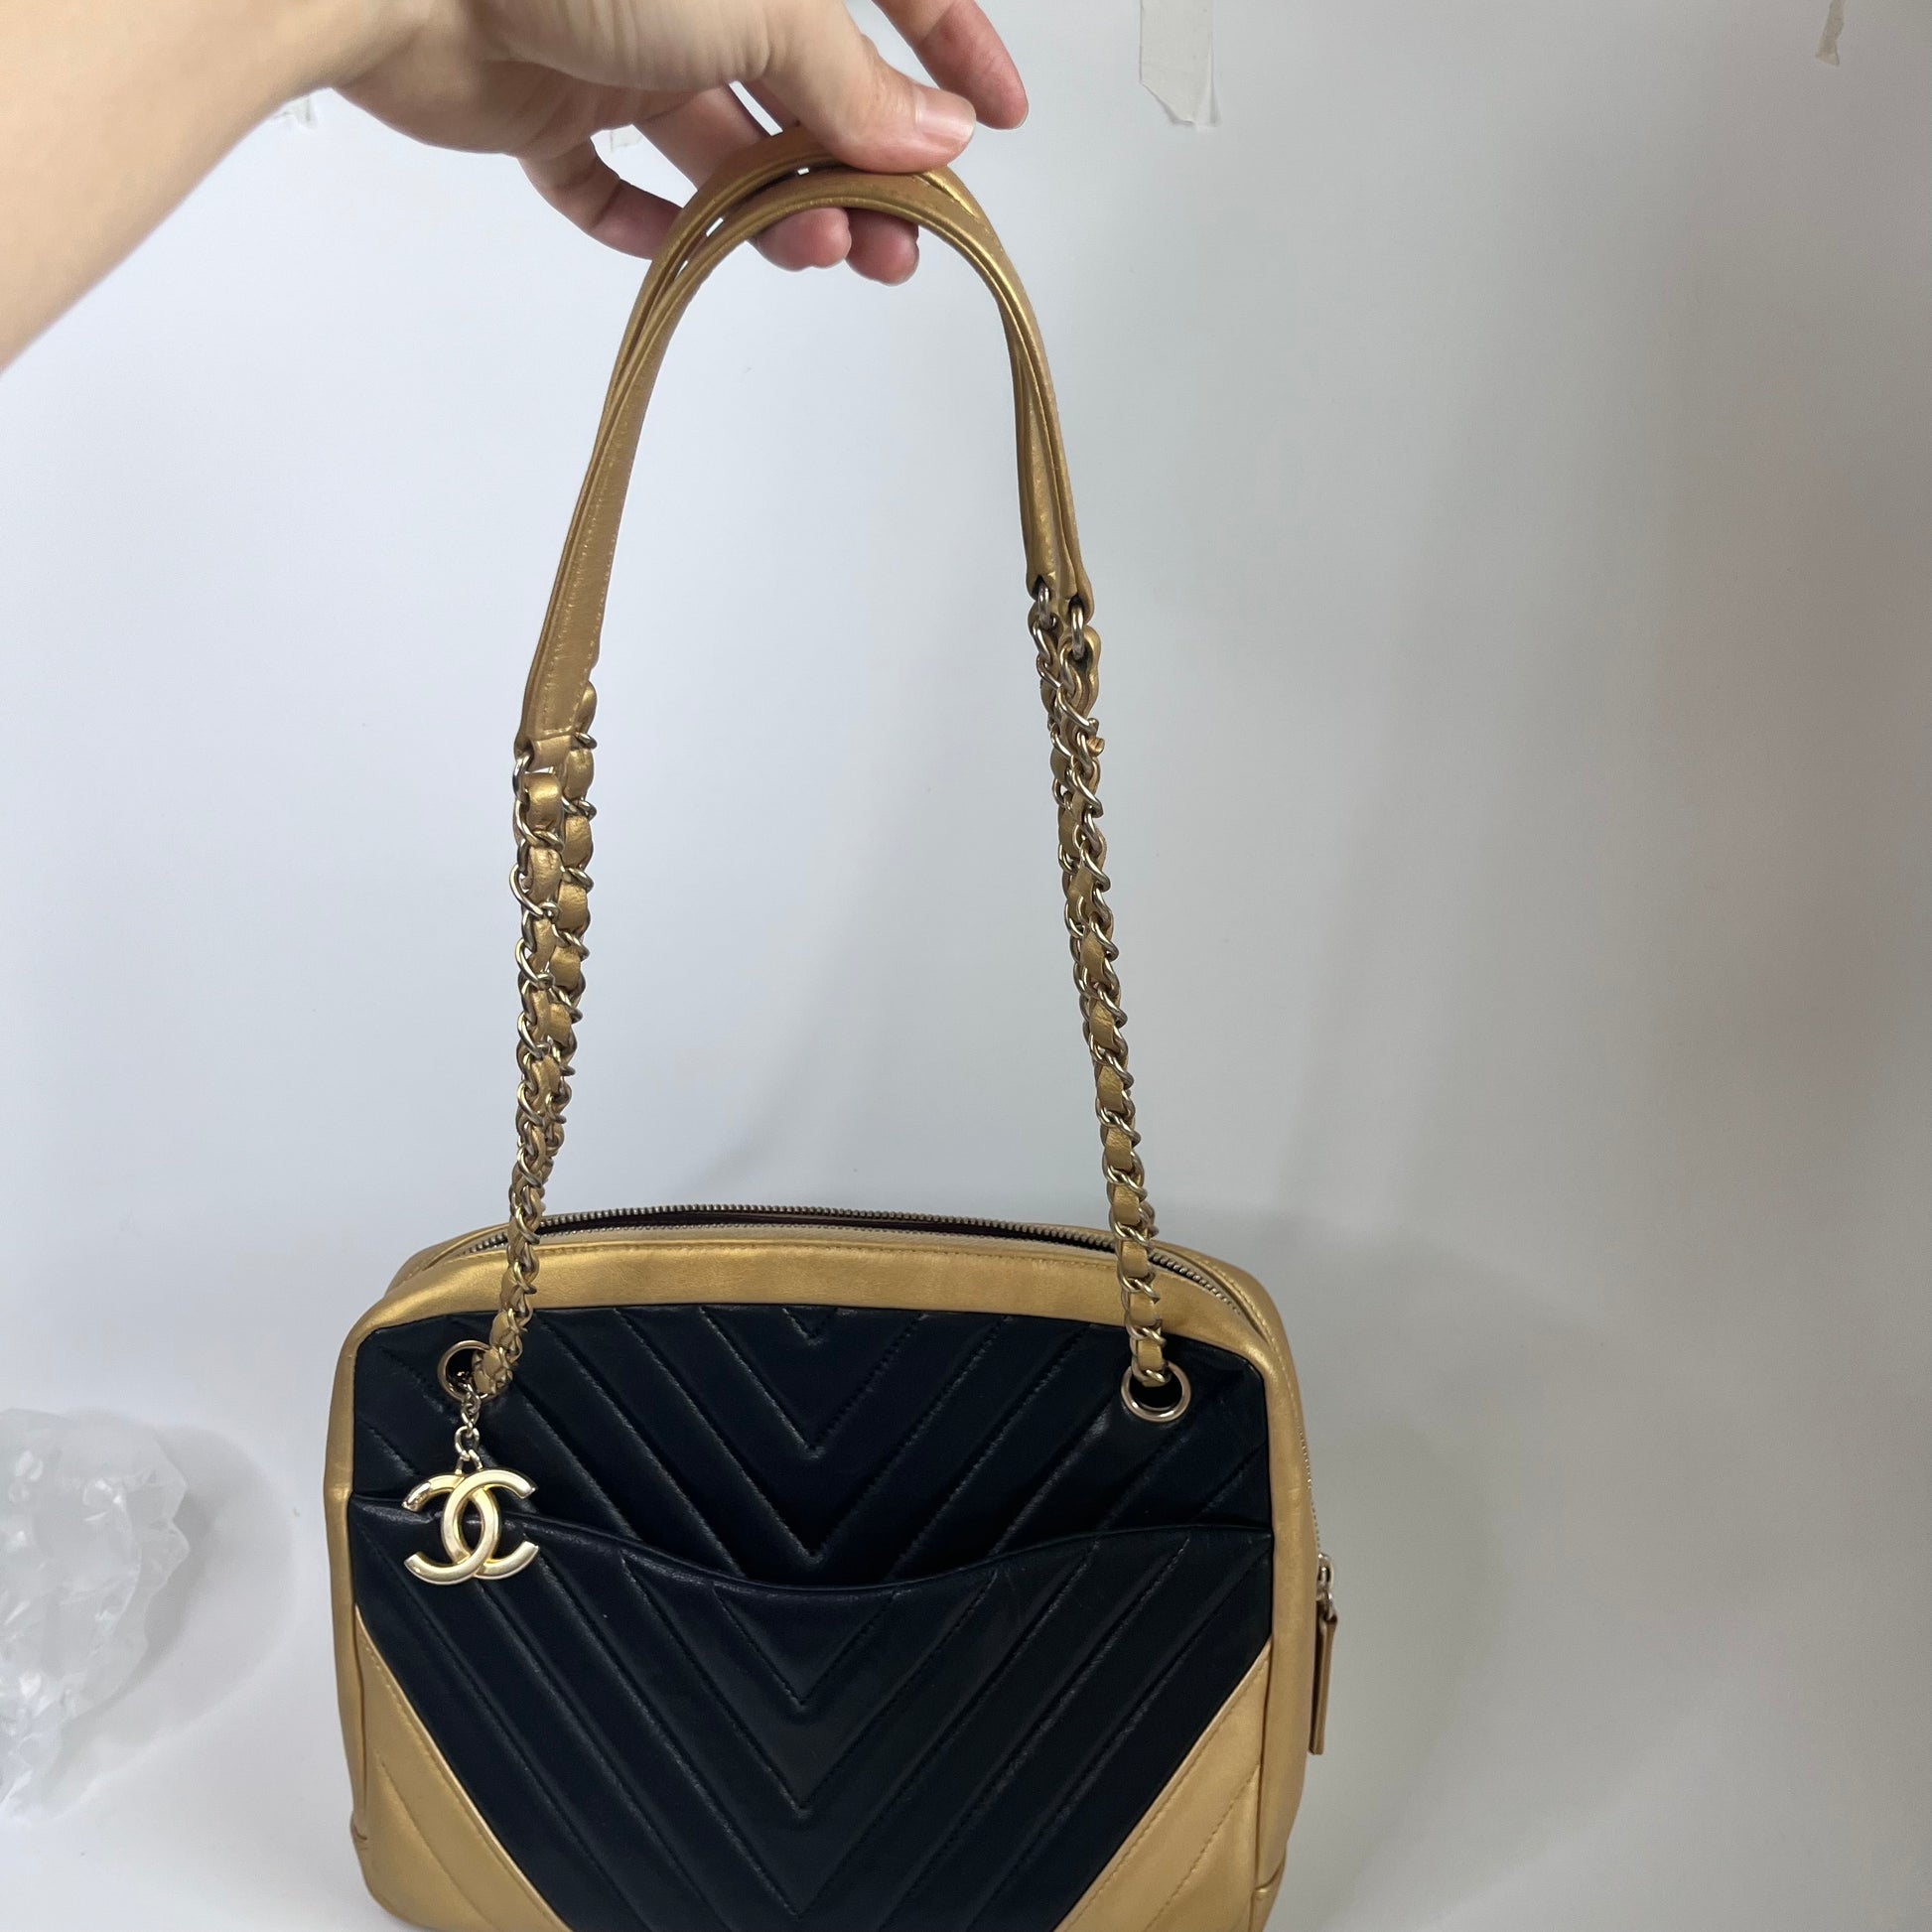 Sold Chanel Chevron Black and Gold Shoulder Bag